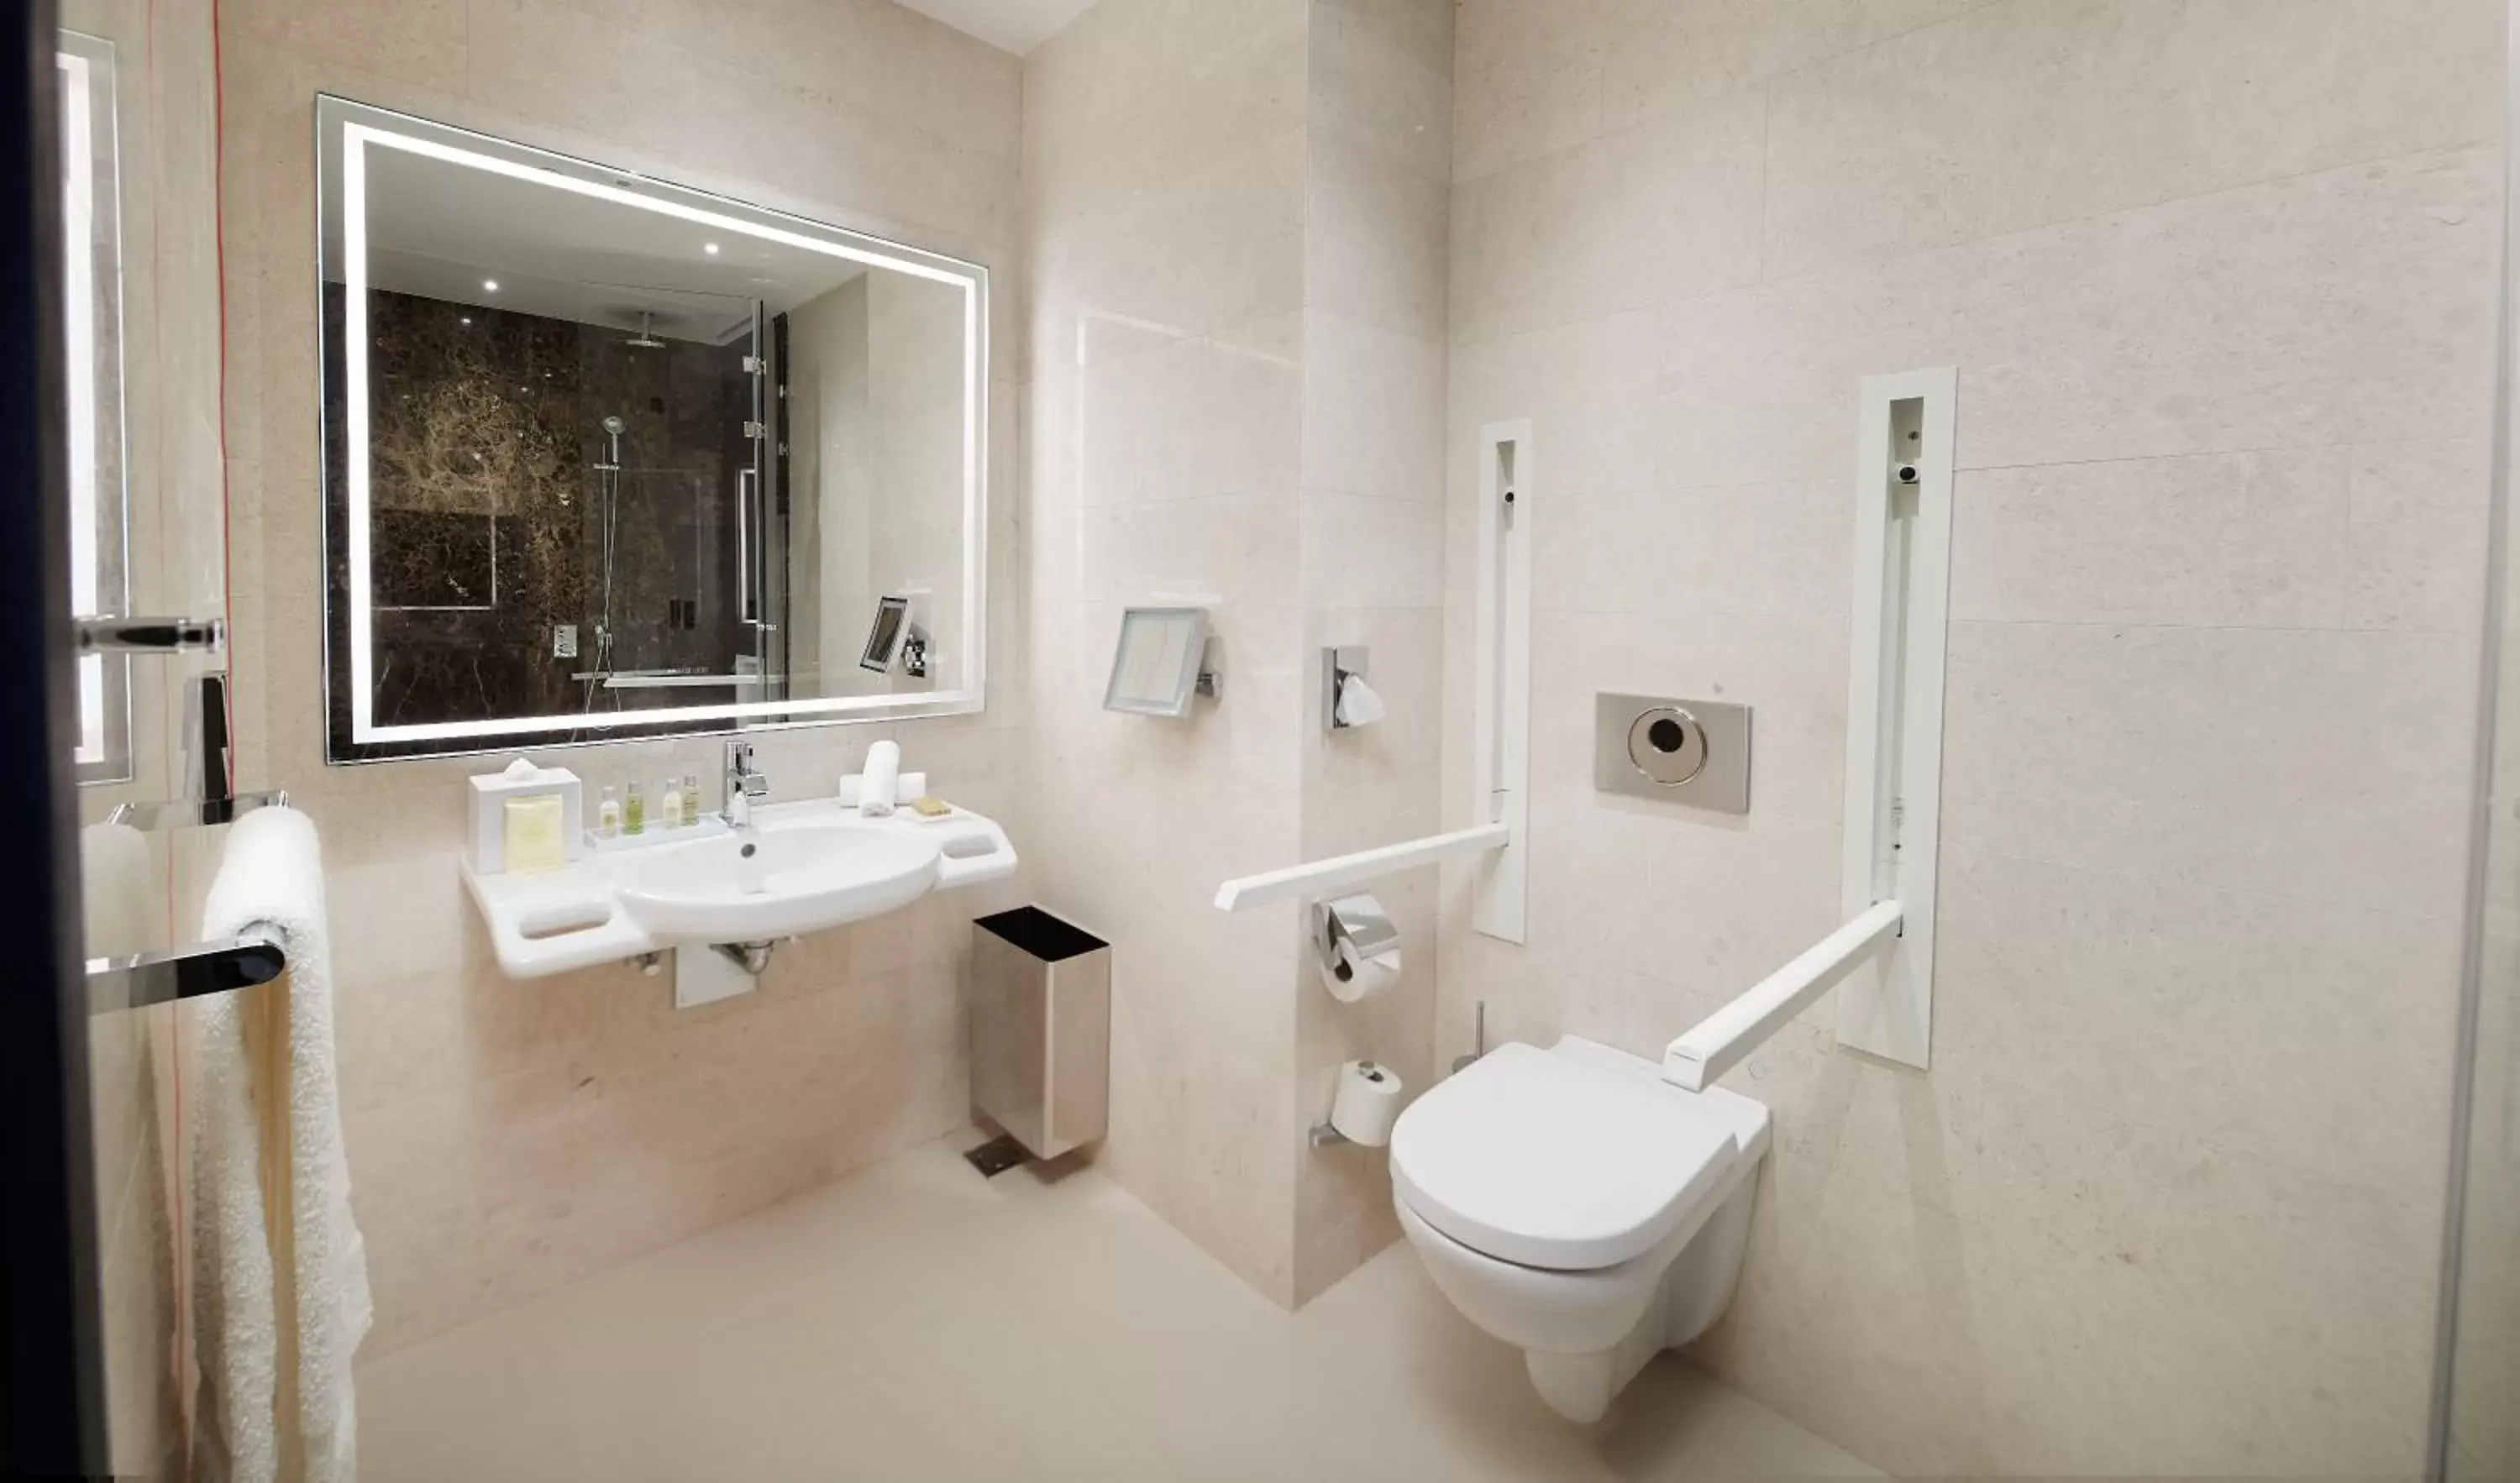 Toilet, Bathroom in Hilton Belgrade